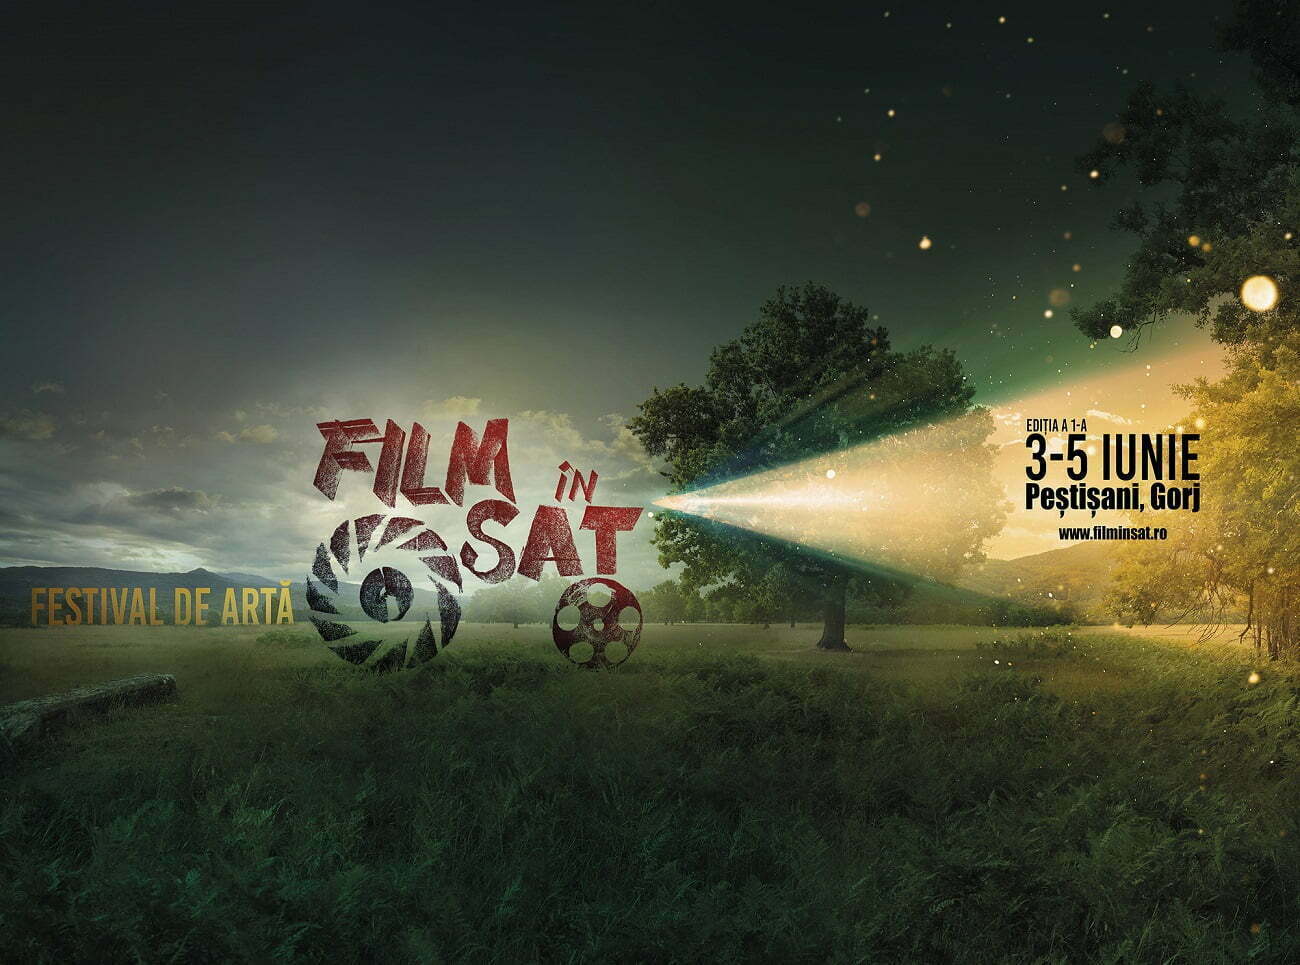 Actorul Cuzin Toma lansează festivalul de artă Film în sat – Proiecții, concerte și teatru